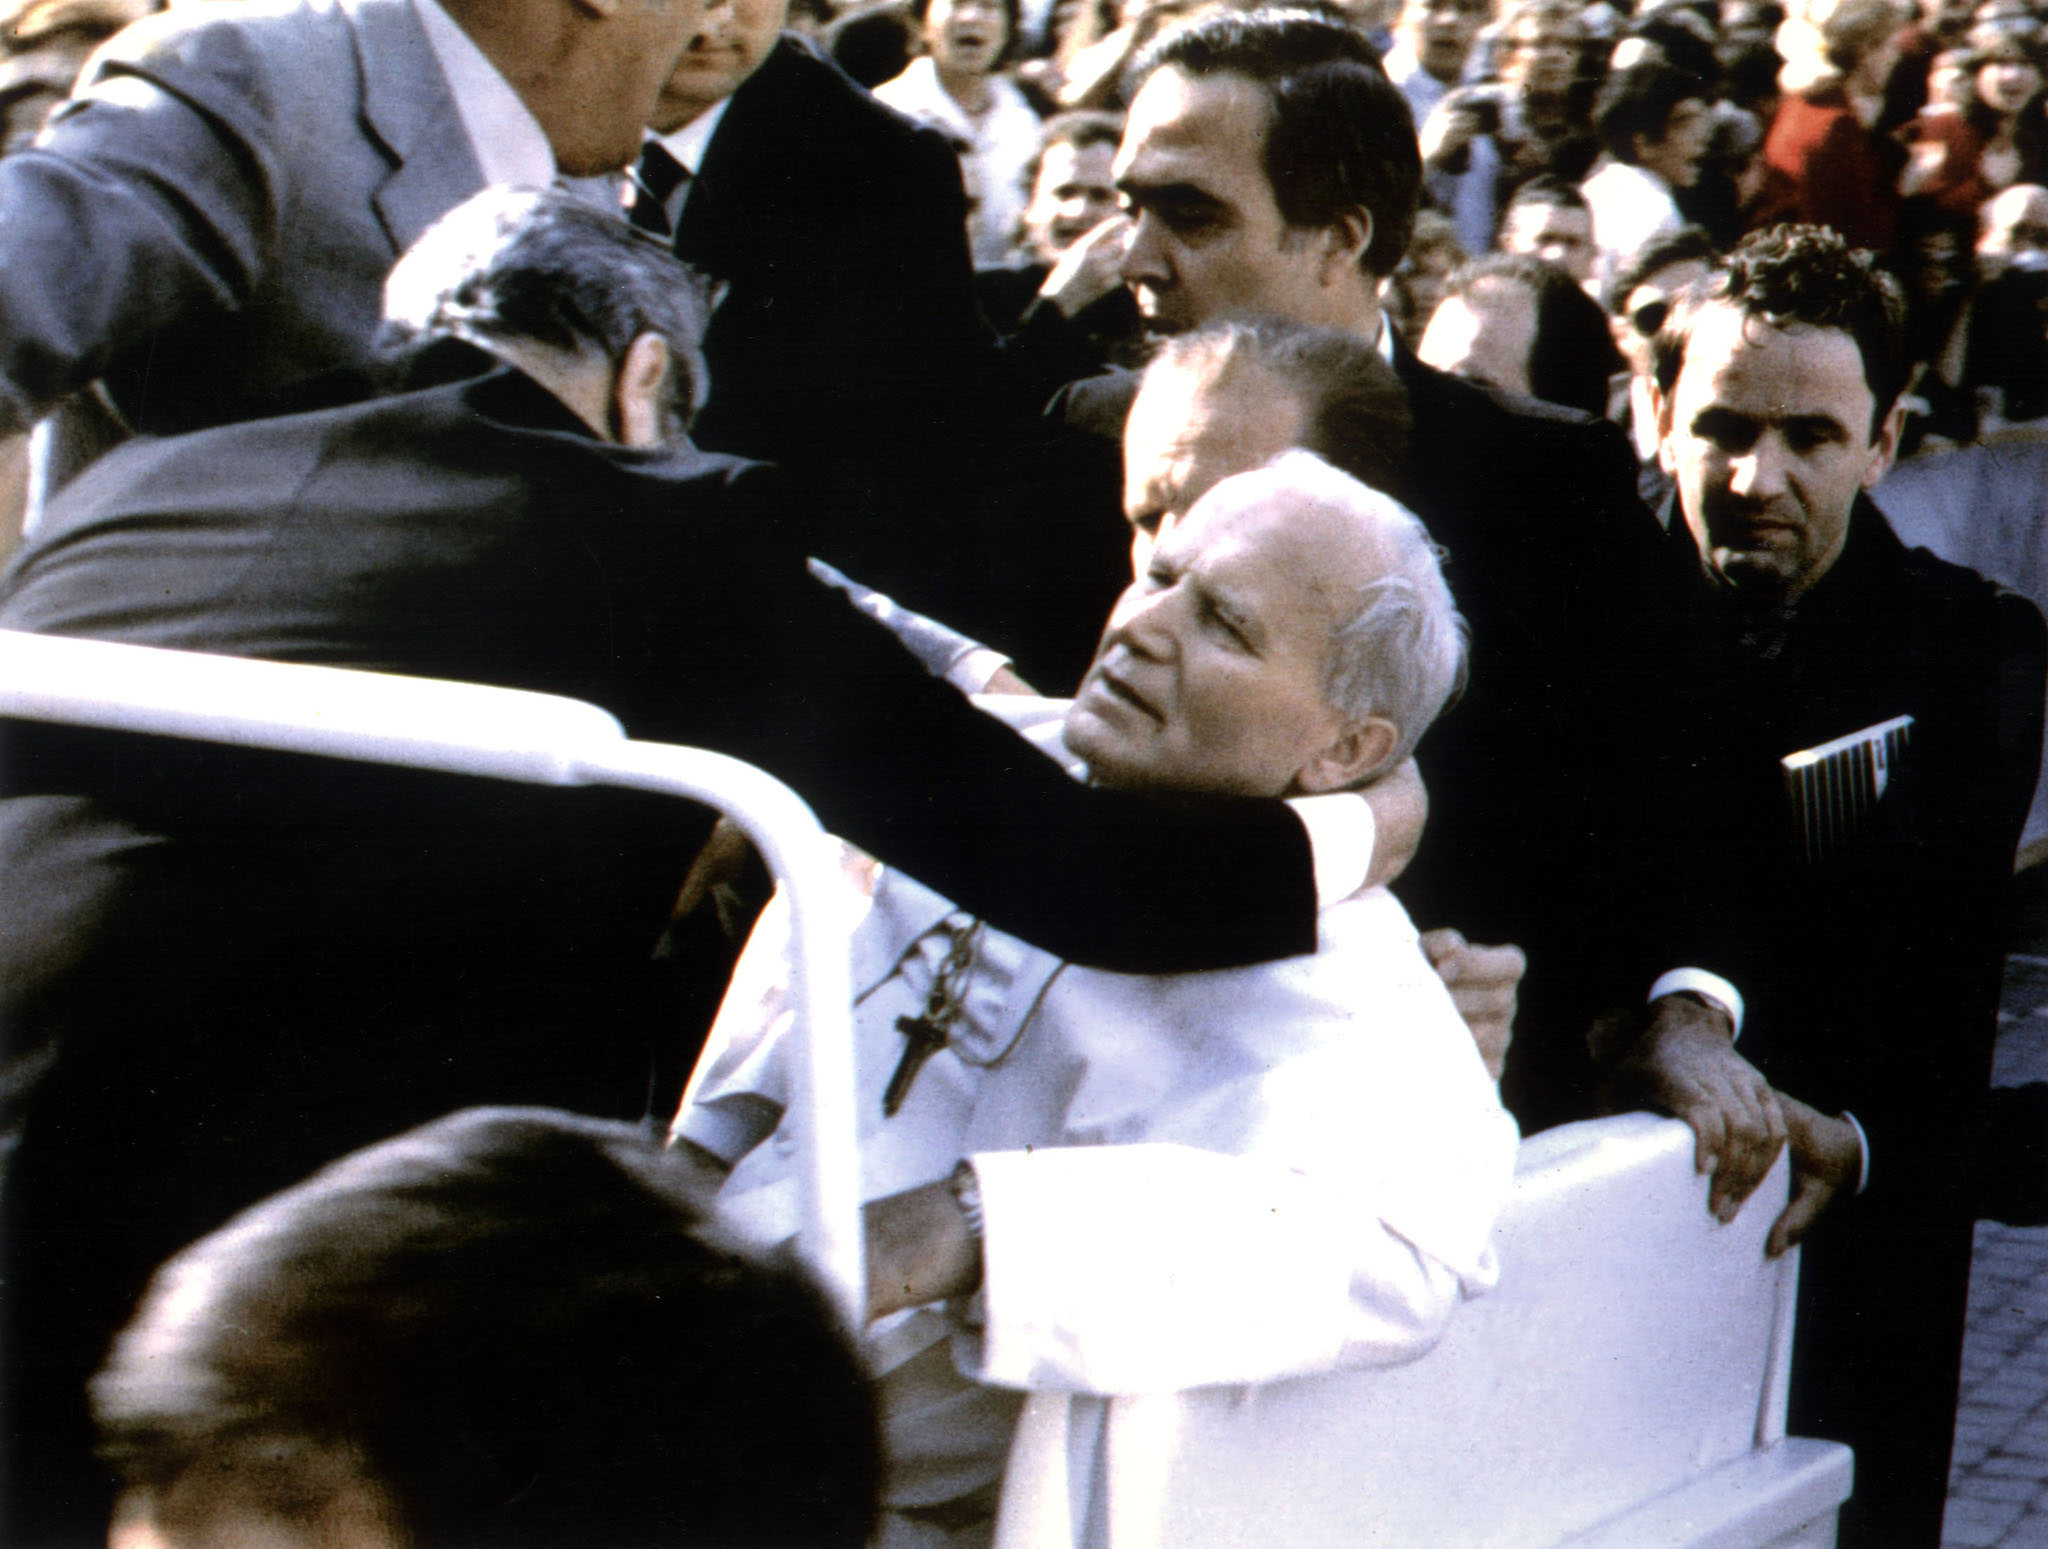 2000 06 13T000000Z 99688600 RP2DRIAEJCAB RTRMADP 3 POPE AGCA AMNESTY Nesta quinta-feira, completa 40 anos do atentado contra João Paulo II